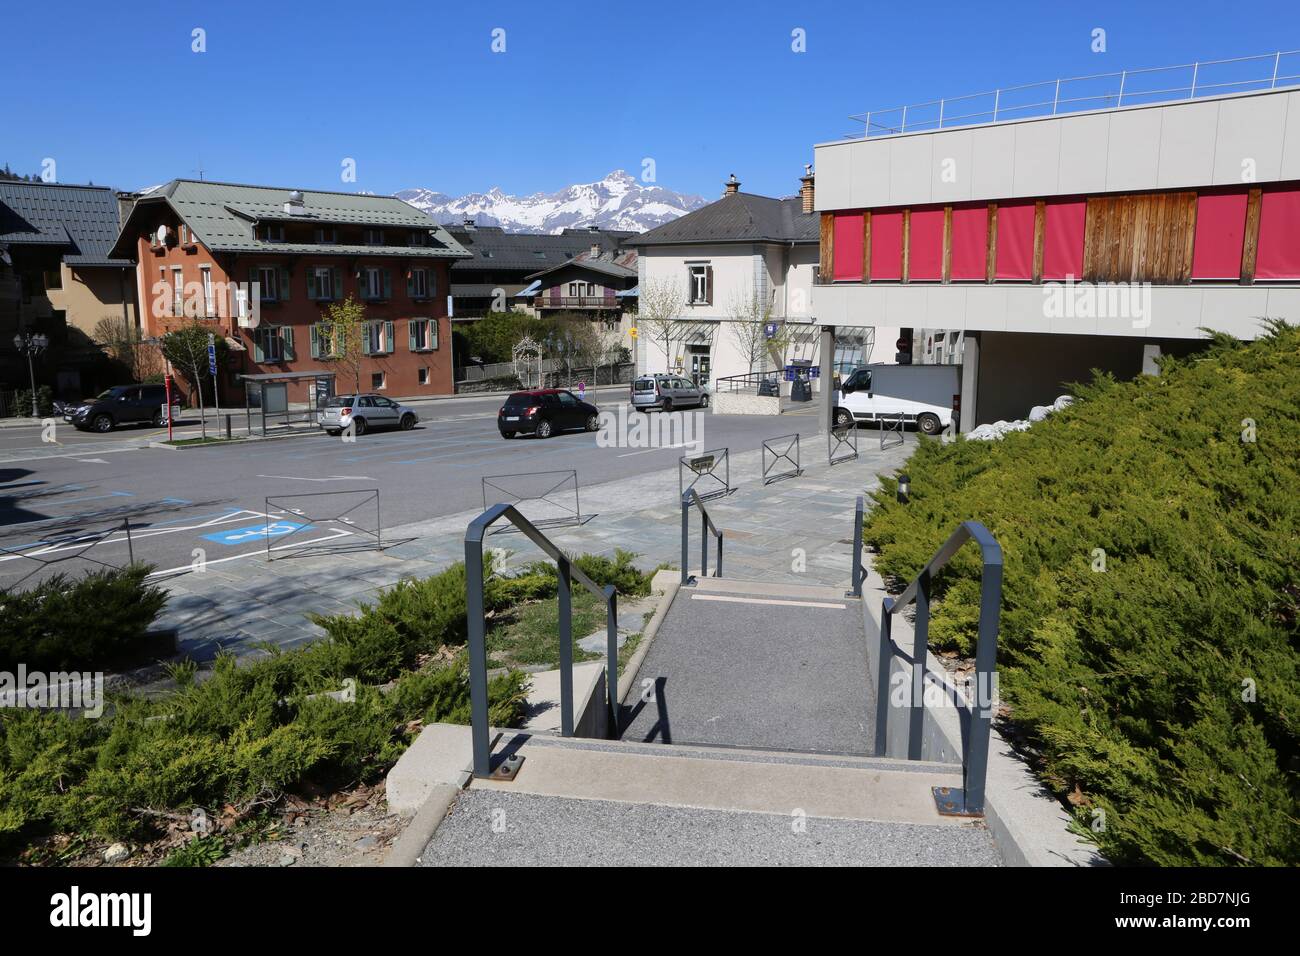 Groupe scolaire Marie Paradis. Saint-Gervais-les-Bains. Alta Saboya. Francia. Foto de stock